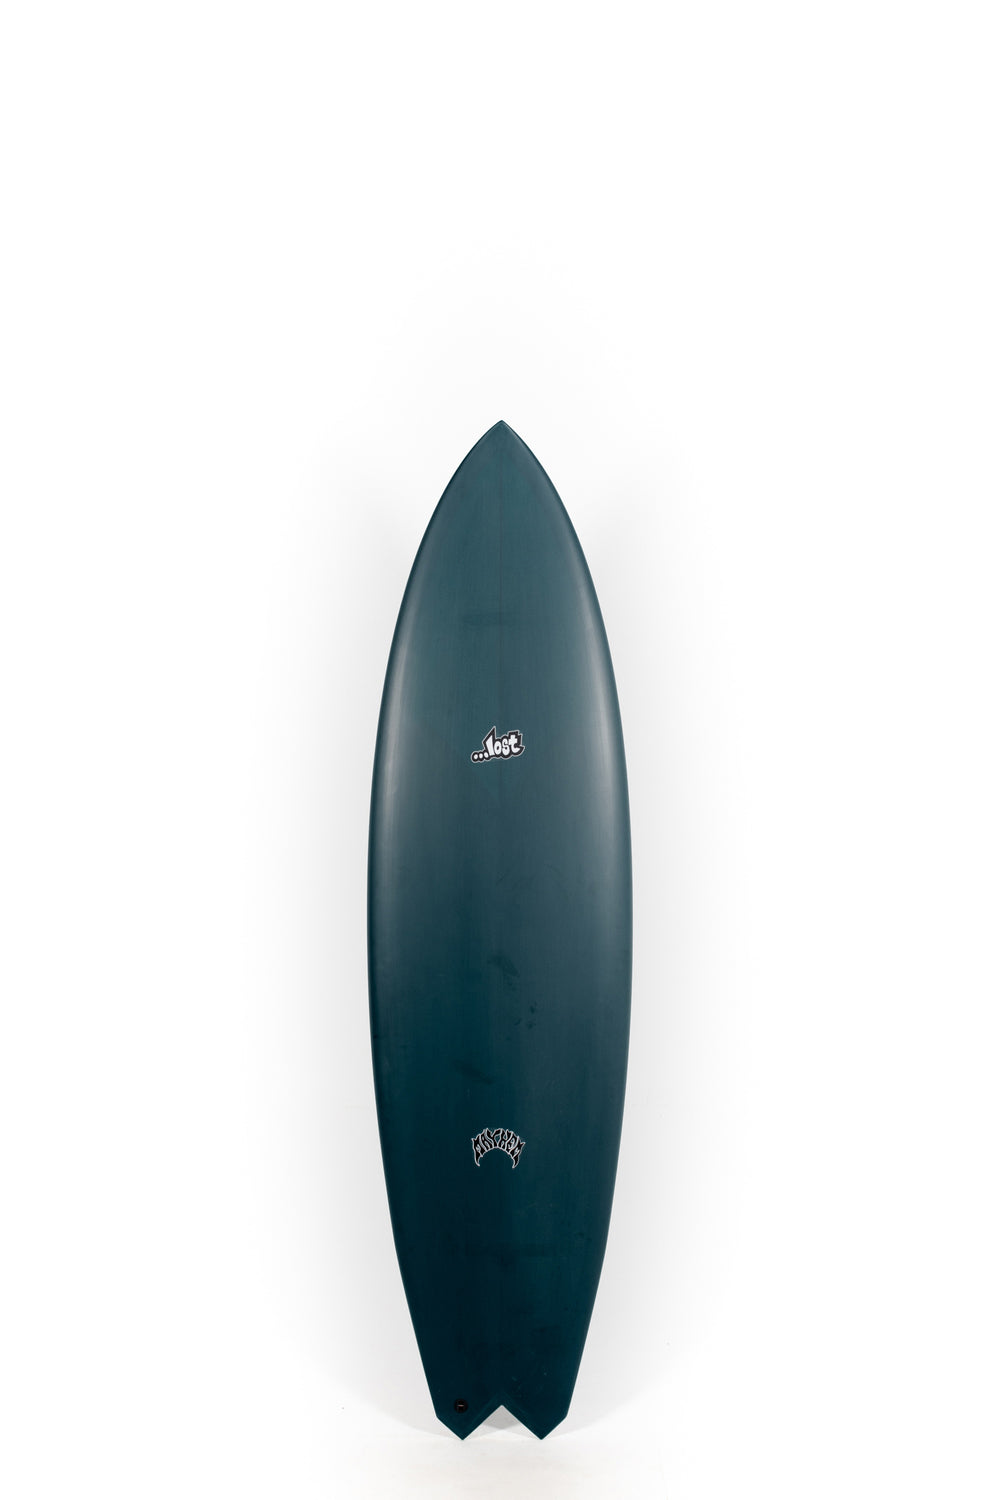 Pukas Surf Shop - Lost Surfboards - GLYDRA by Matt Biolos - 6'6